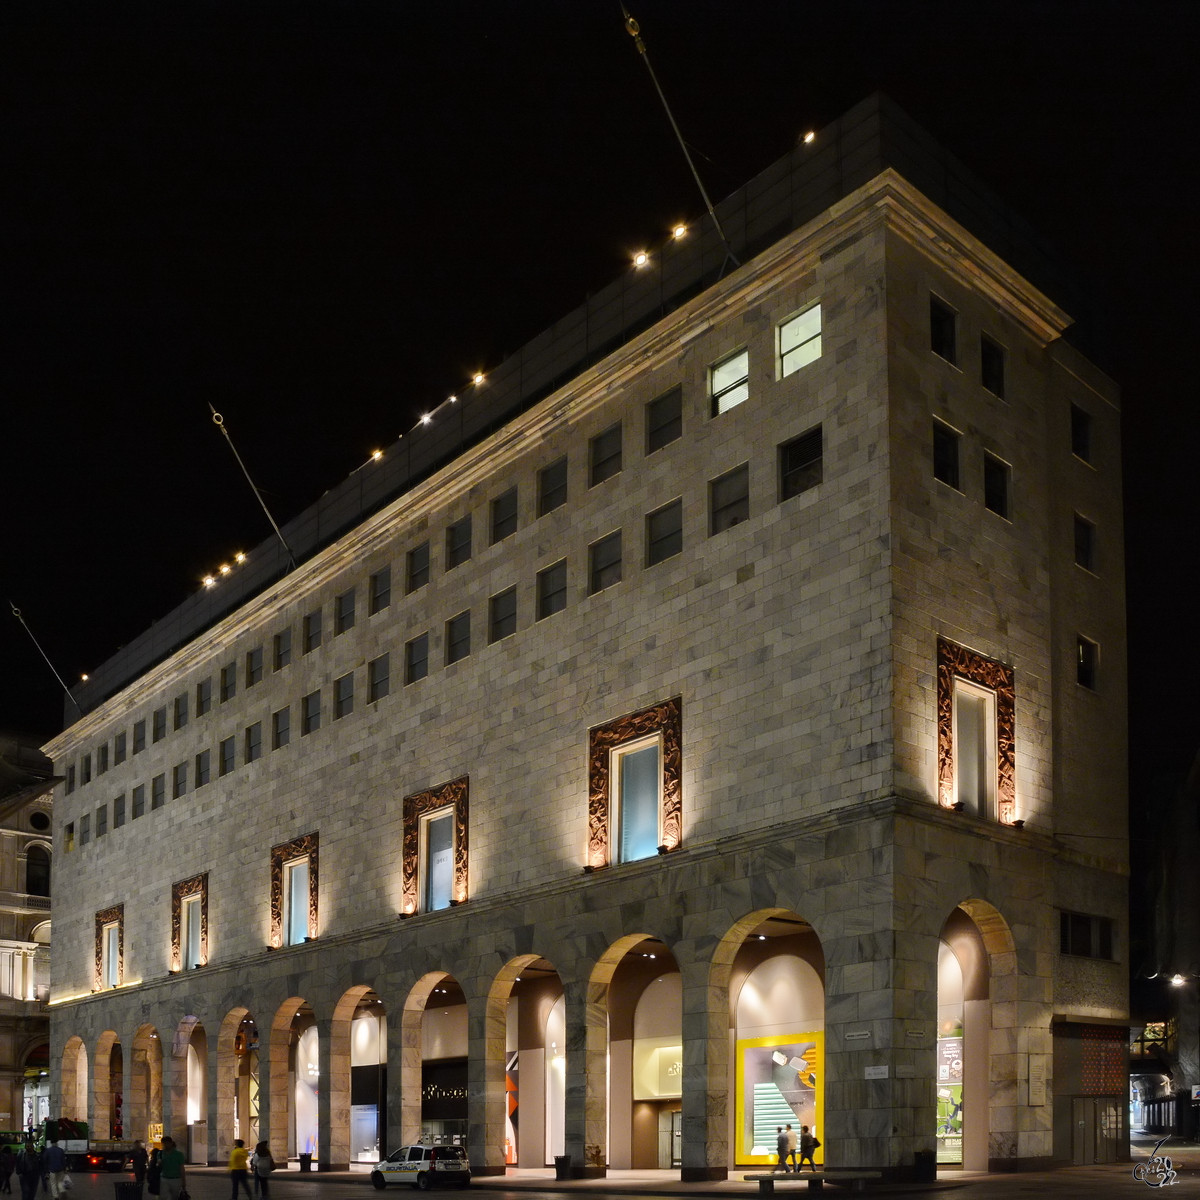 Ein Einkaufsgebude am im 19. Jahrhundert entstandenen Domplatz (Piazza del Duomo) von Mailand. (Juni 2014)